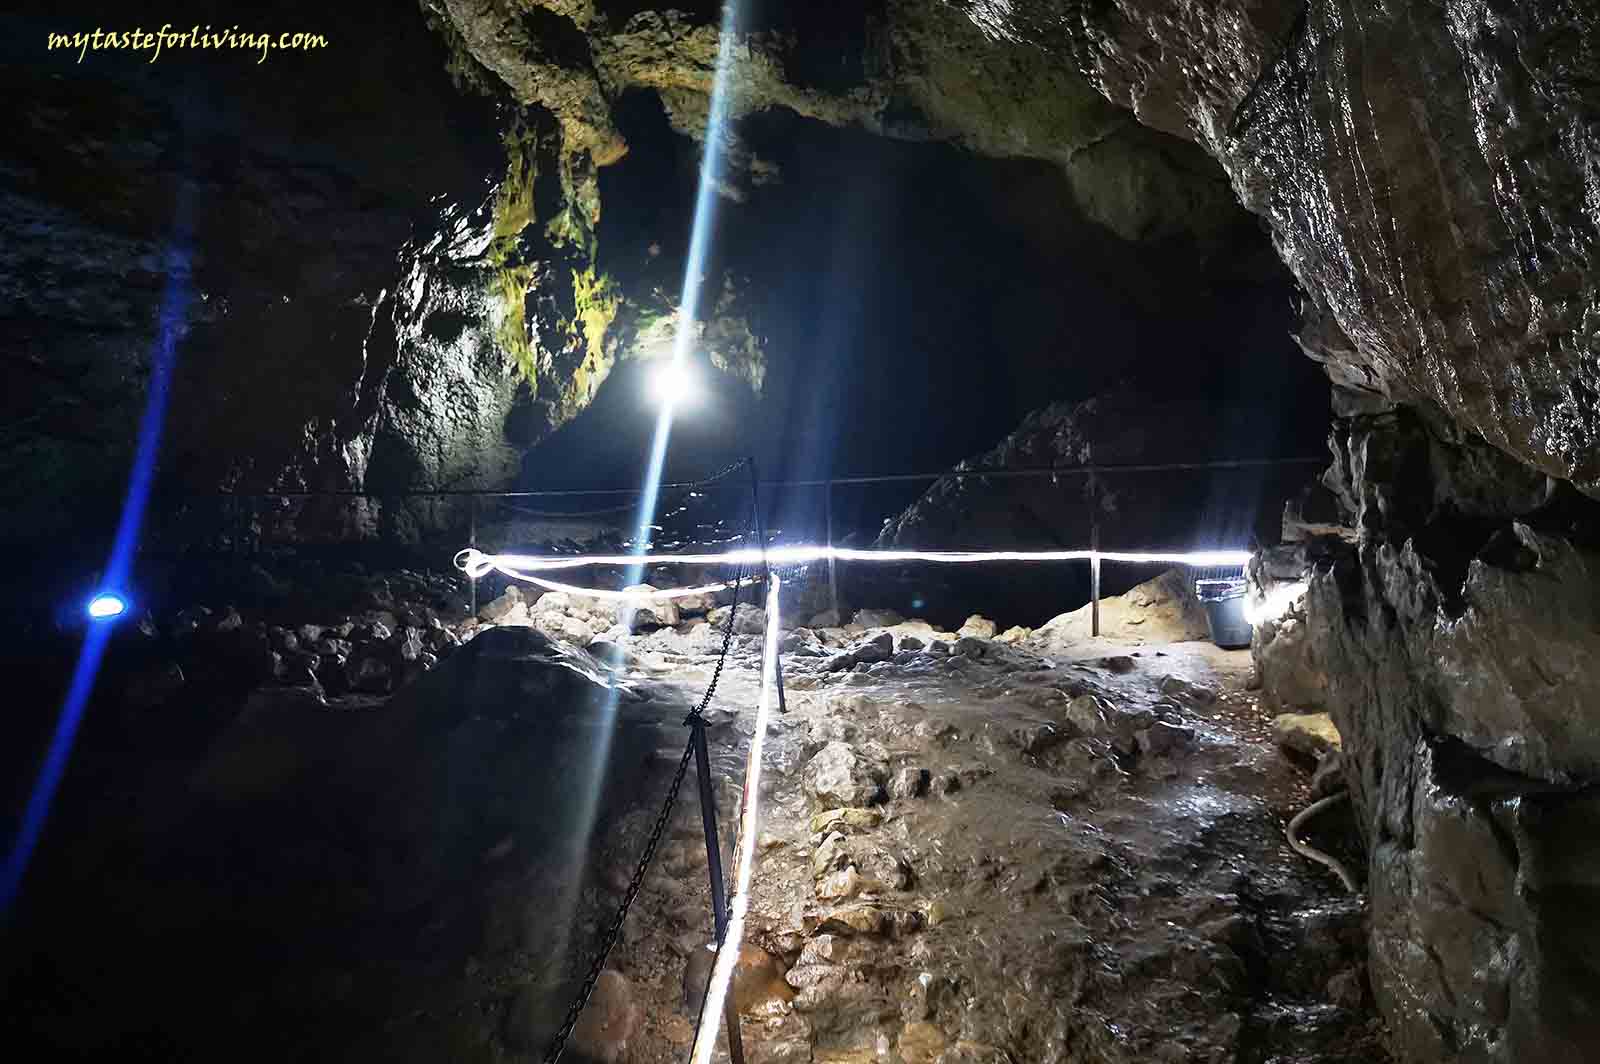 Пещерата Бачо Киро се намира на около 5 км от град Дряново, в близост до Дряновския манастир, в каньоните на Дряновската река и река Андъка. Намира се в прекрасен район, където има какво още да се разгледа и да се разходите. Освен Дряновския манастир, има заведения, както и няколко водопада по пътя.